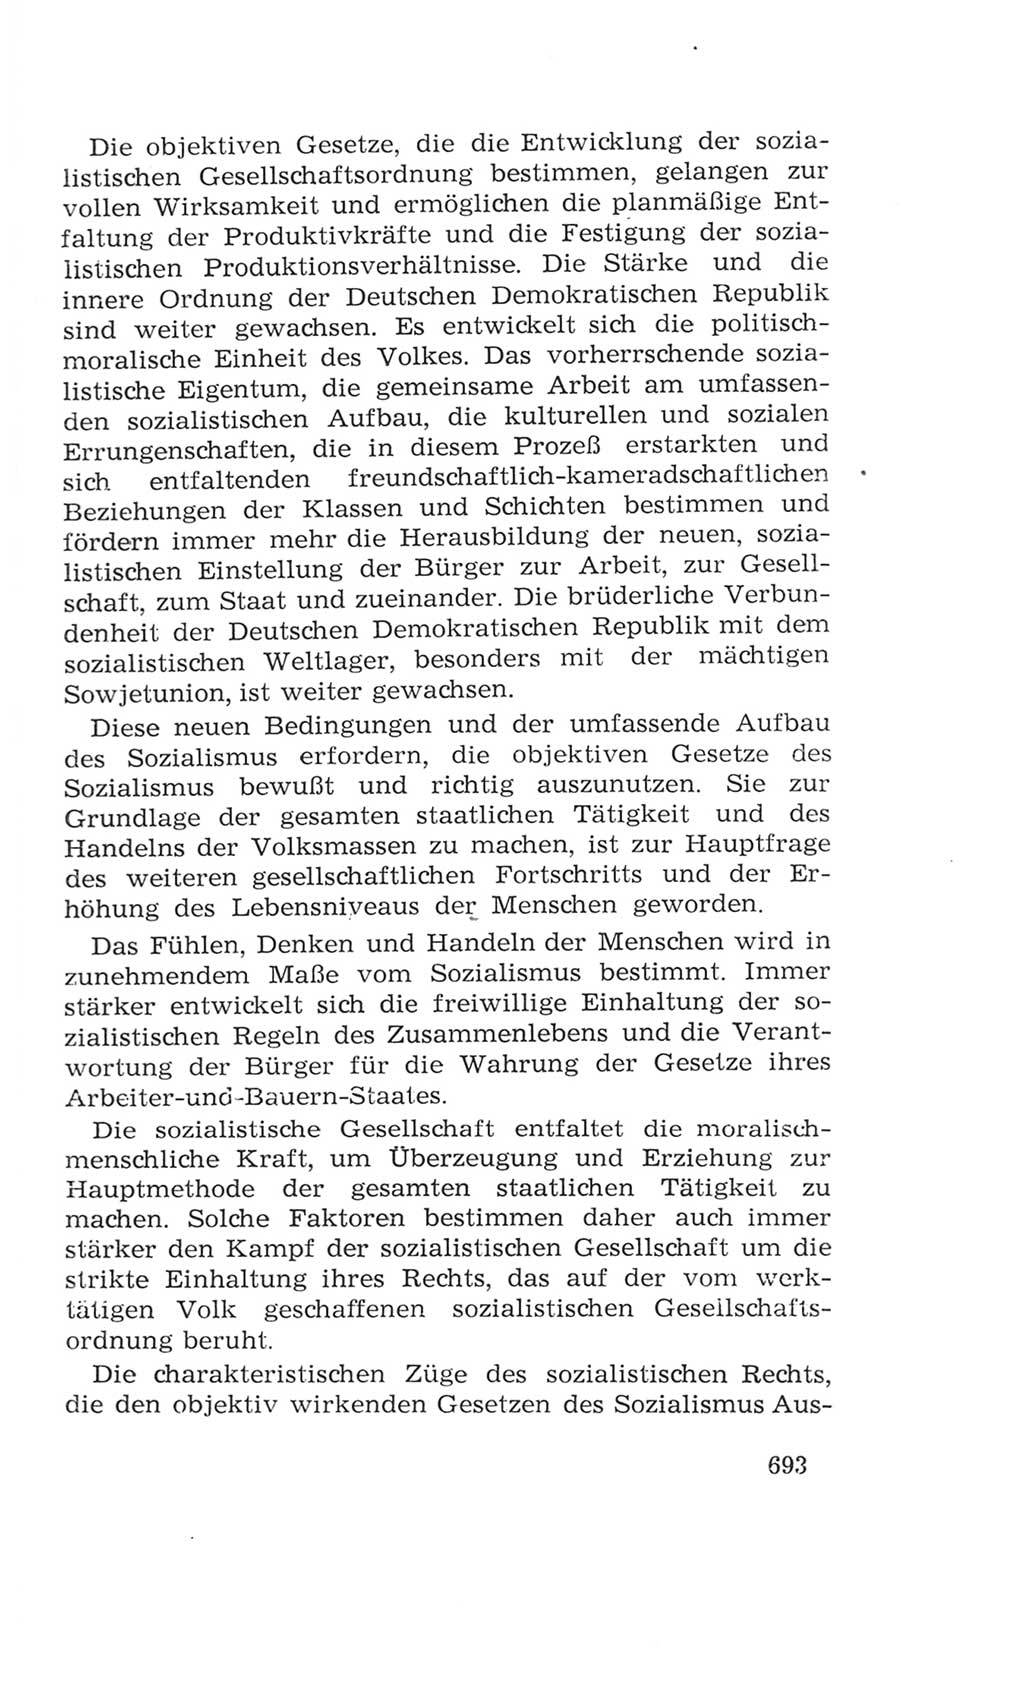 Volkskammer (VK) der Deutschen Demokratischen Republik (DDR), 4. Wahlperiode 1963-1967, Seite 693 (VK. DDR 4. WP. 1963-1967, S. 693)